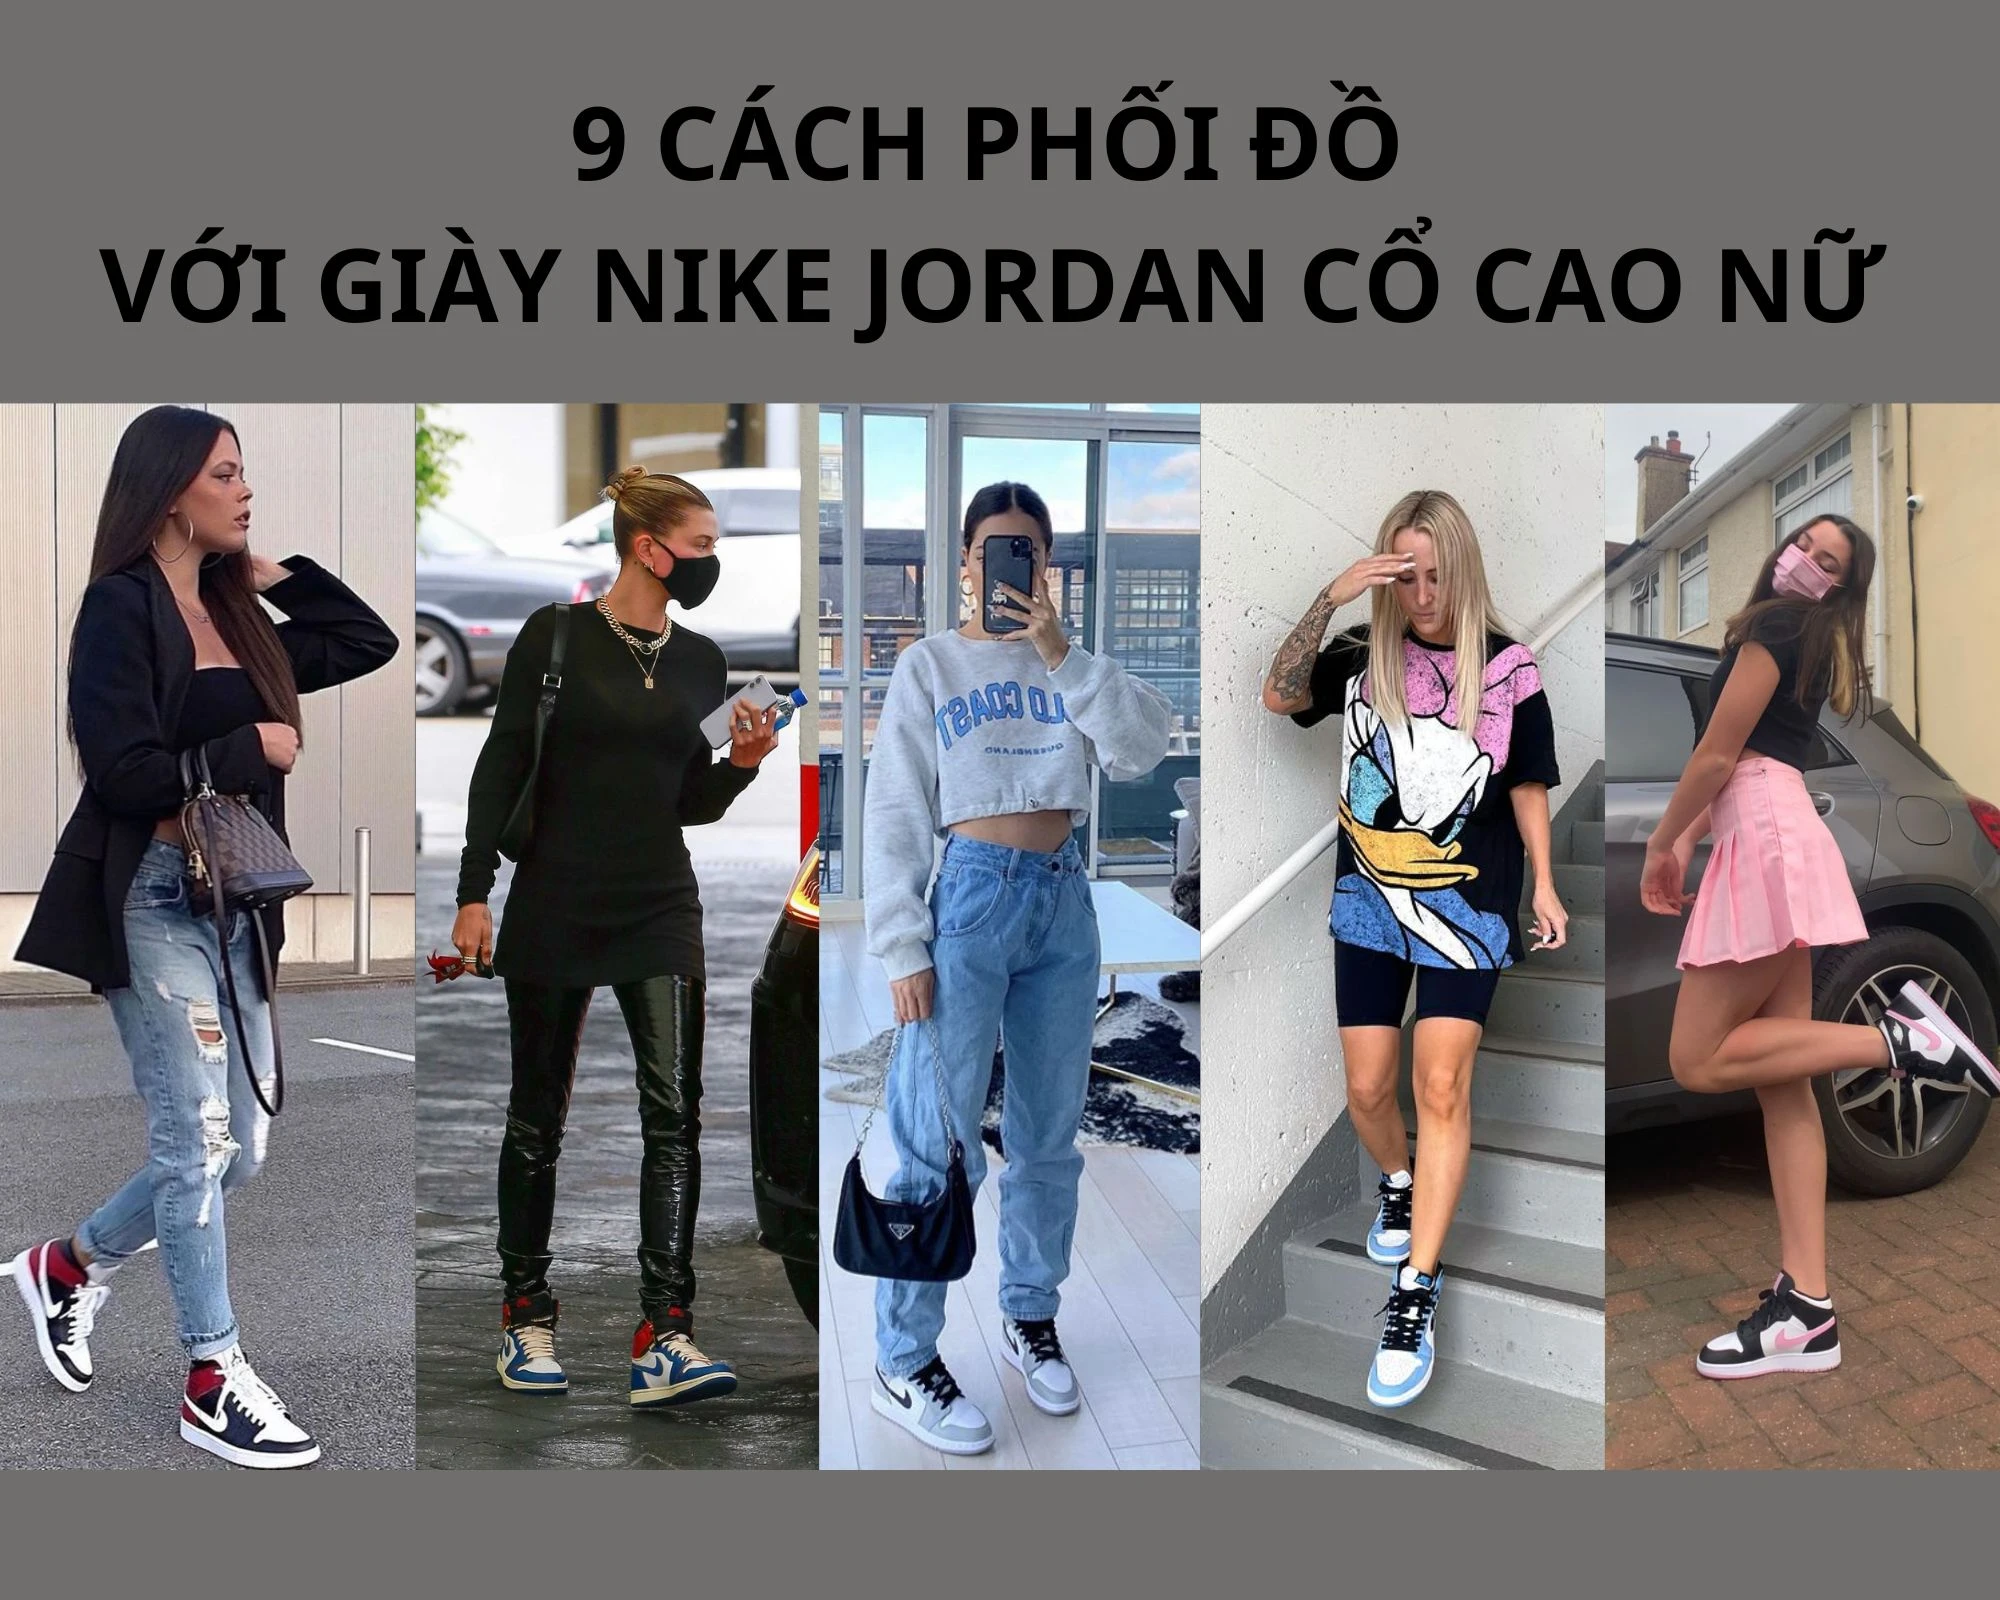 Biến hóa phong cách cùng 10 cách phối đồ với giày Nike Jordan sành điệu